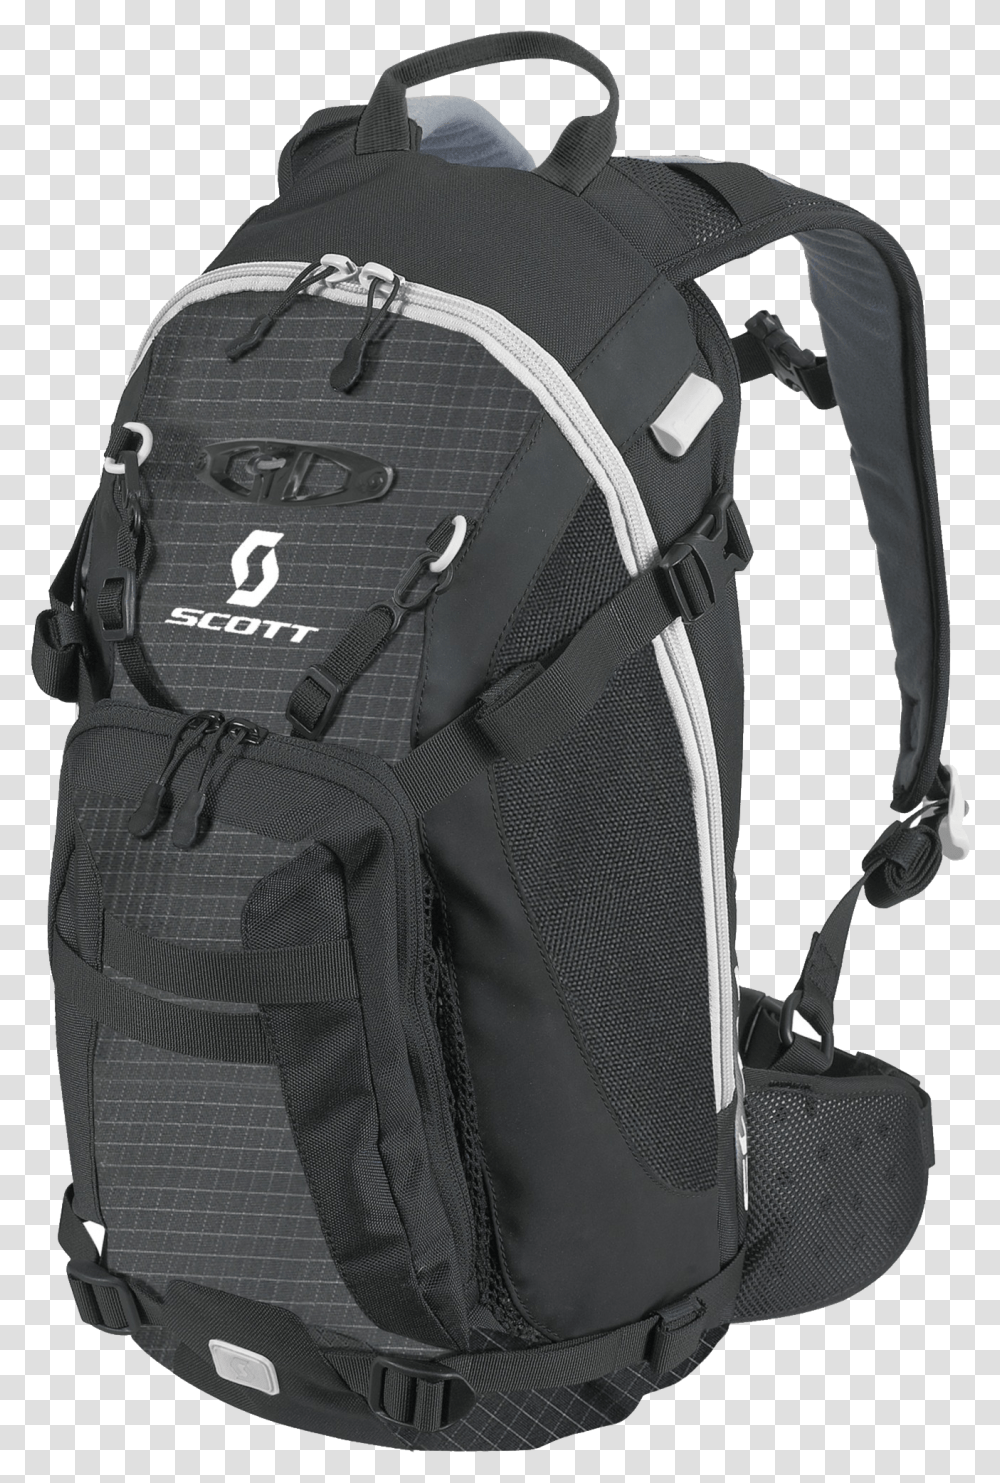 Download Free Scott Black Backpack Hiking Backpack Background, Bag Transparent Png